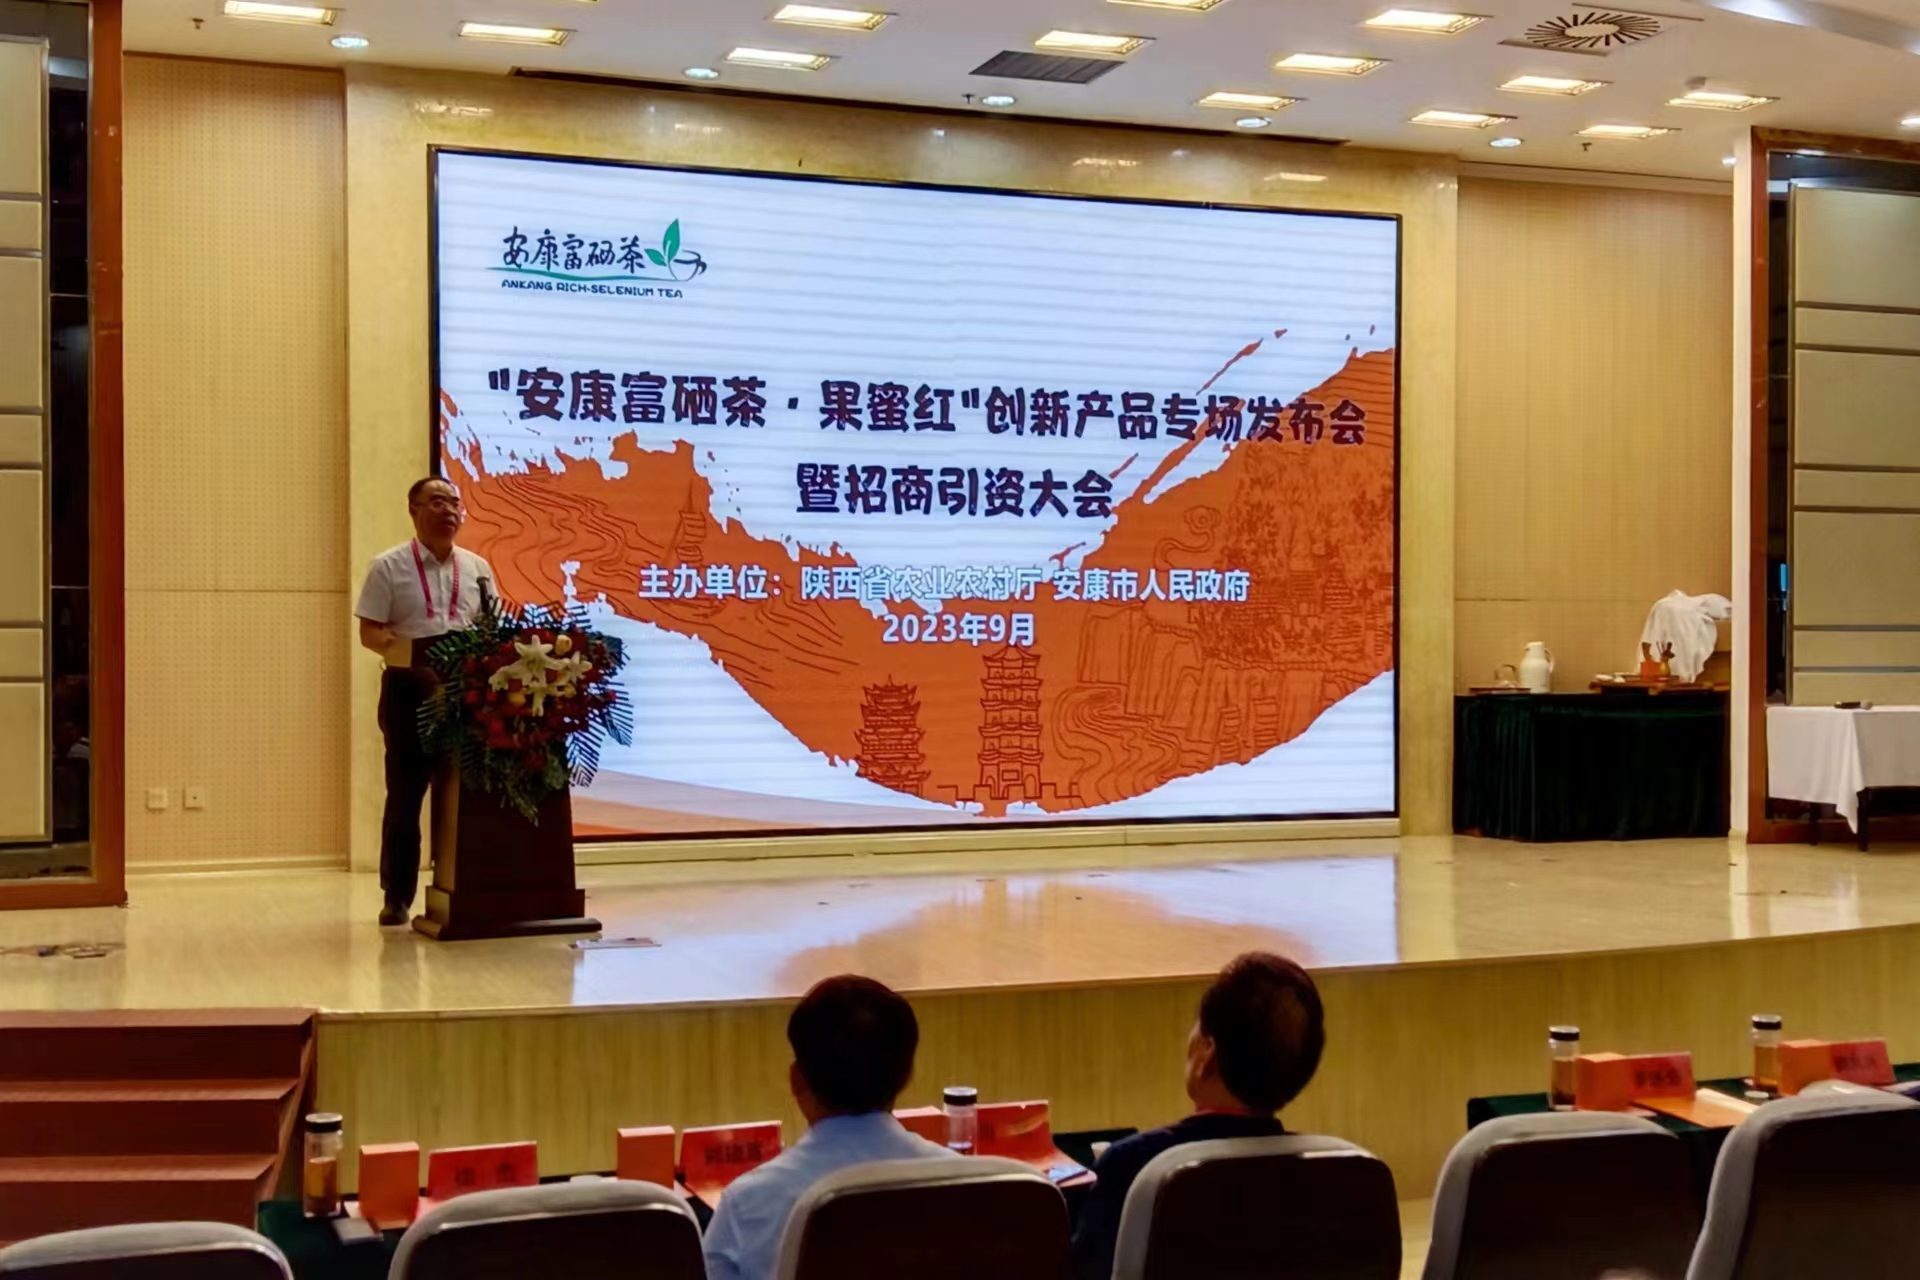 「安康富硒茶·果蜜紅」創新產品發佈 陝安康現場簽約9.8億元